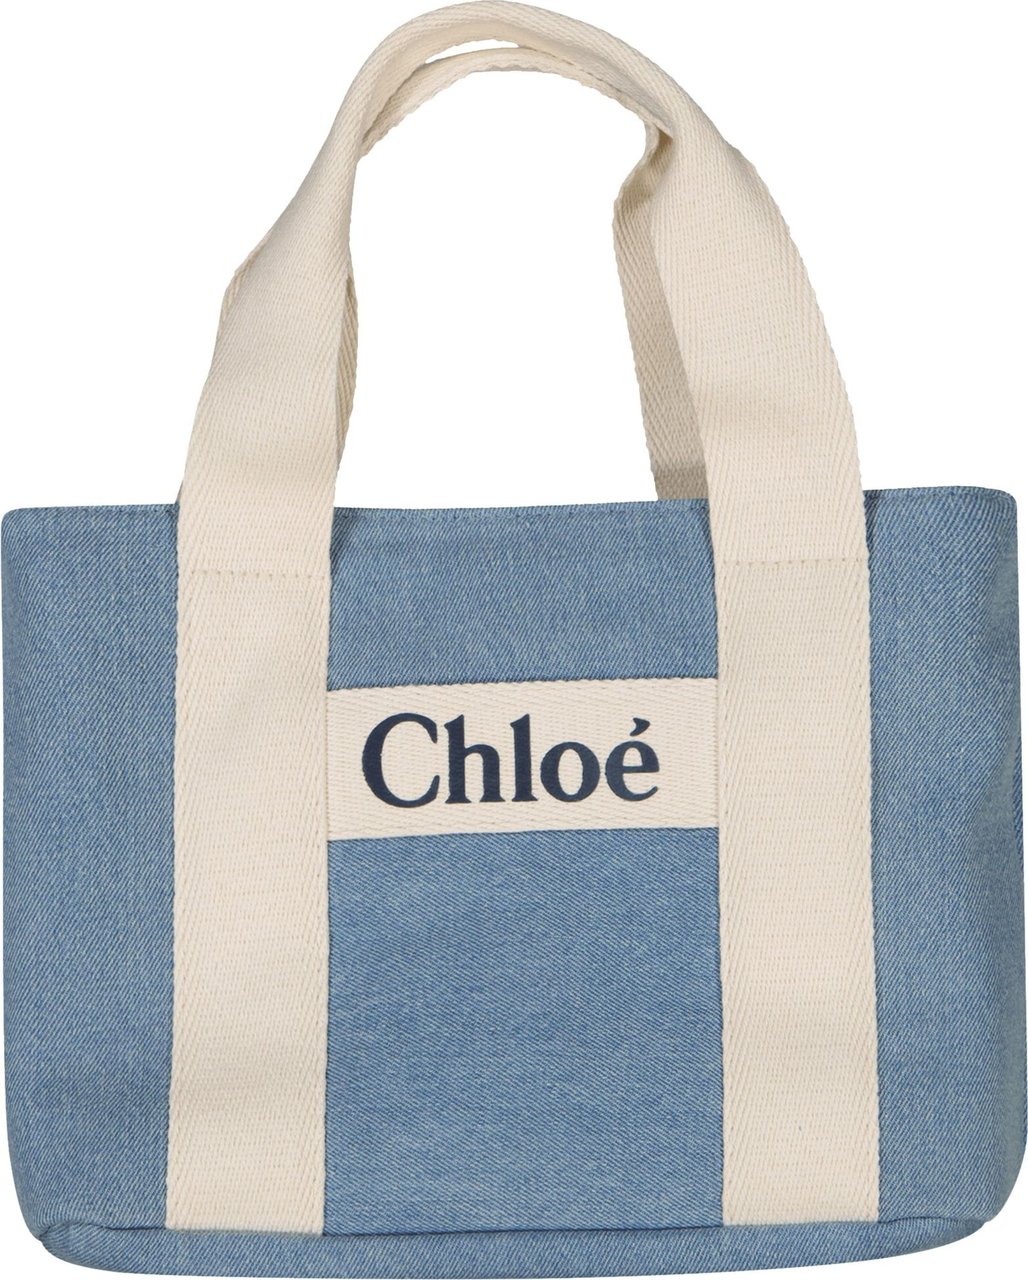 Chloé Chloe Kinder Meisjes Tas Jeans Blauw